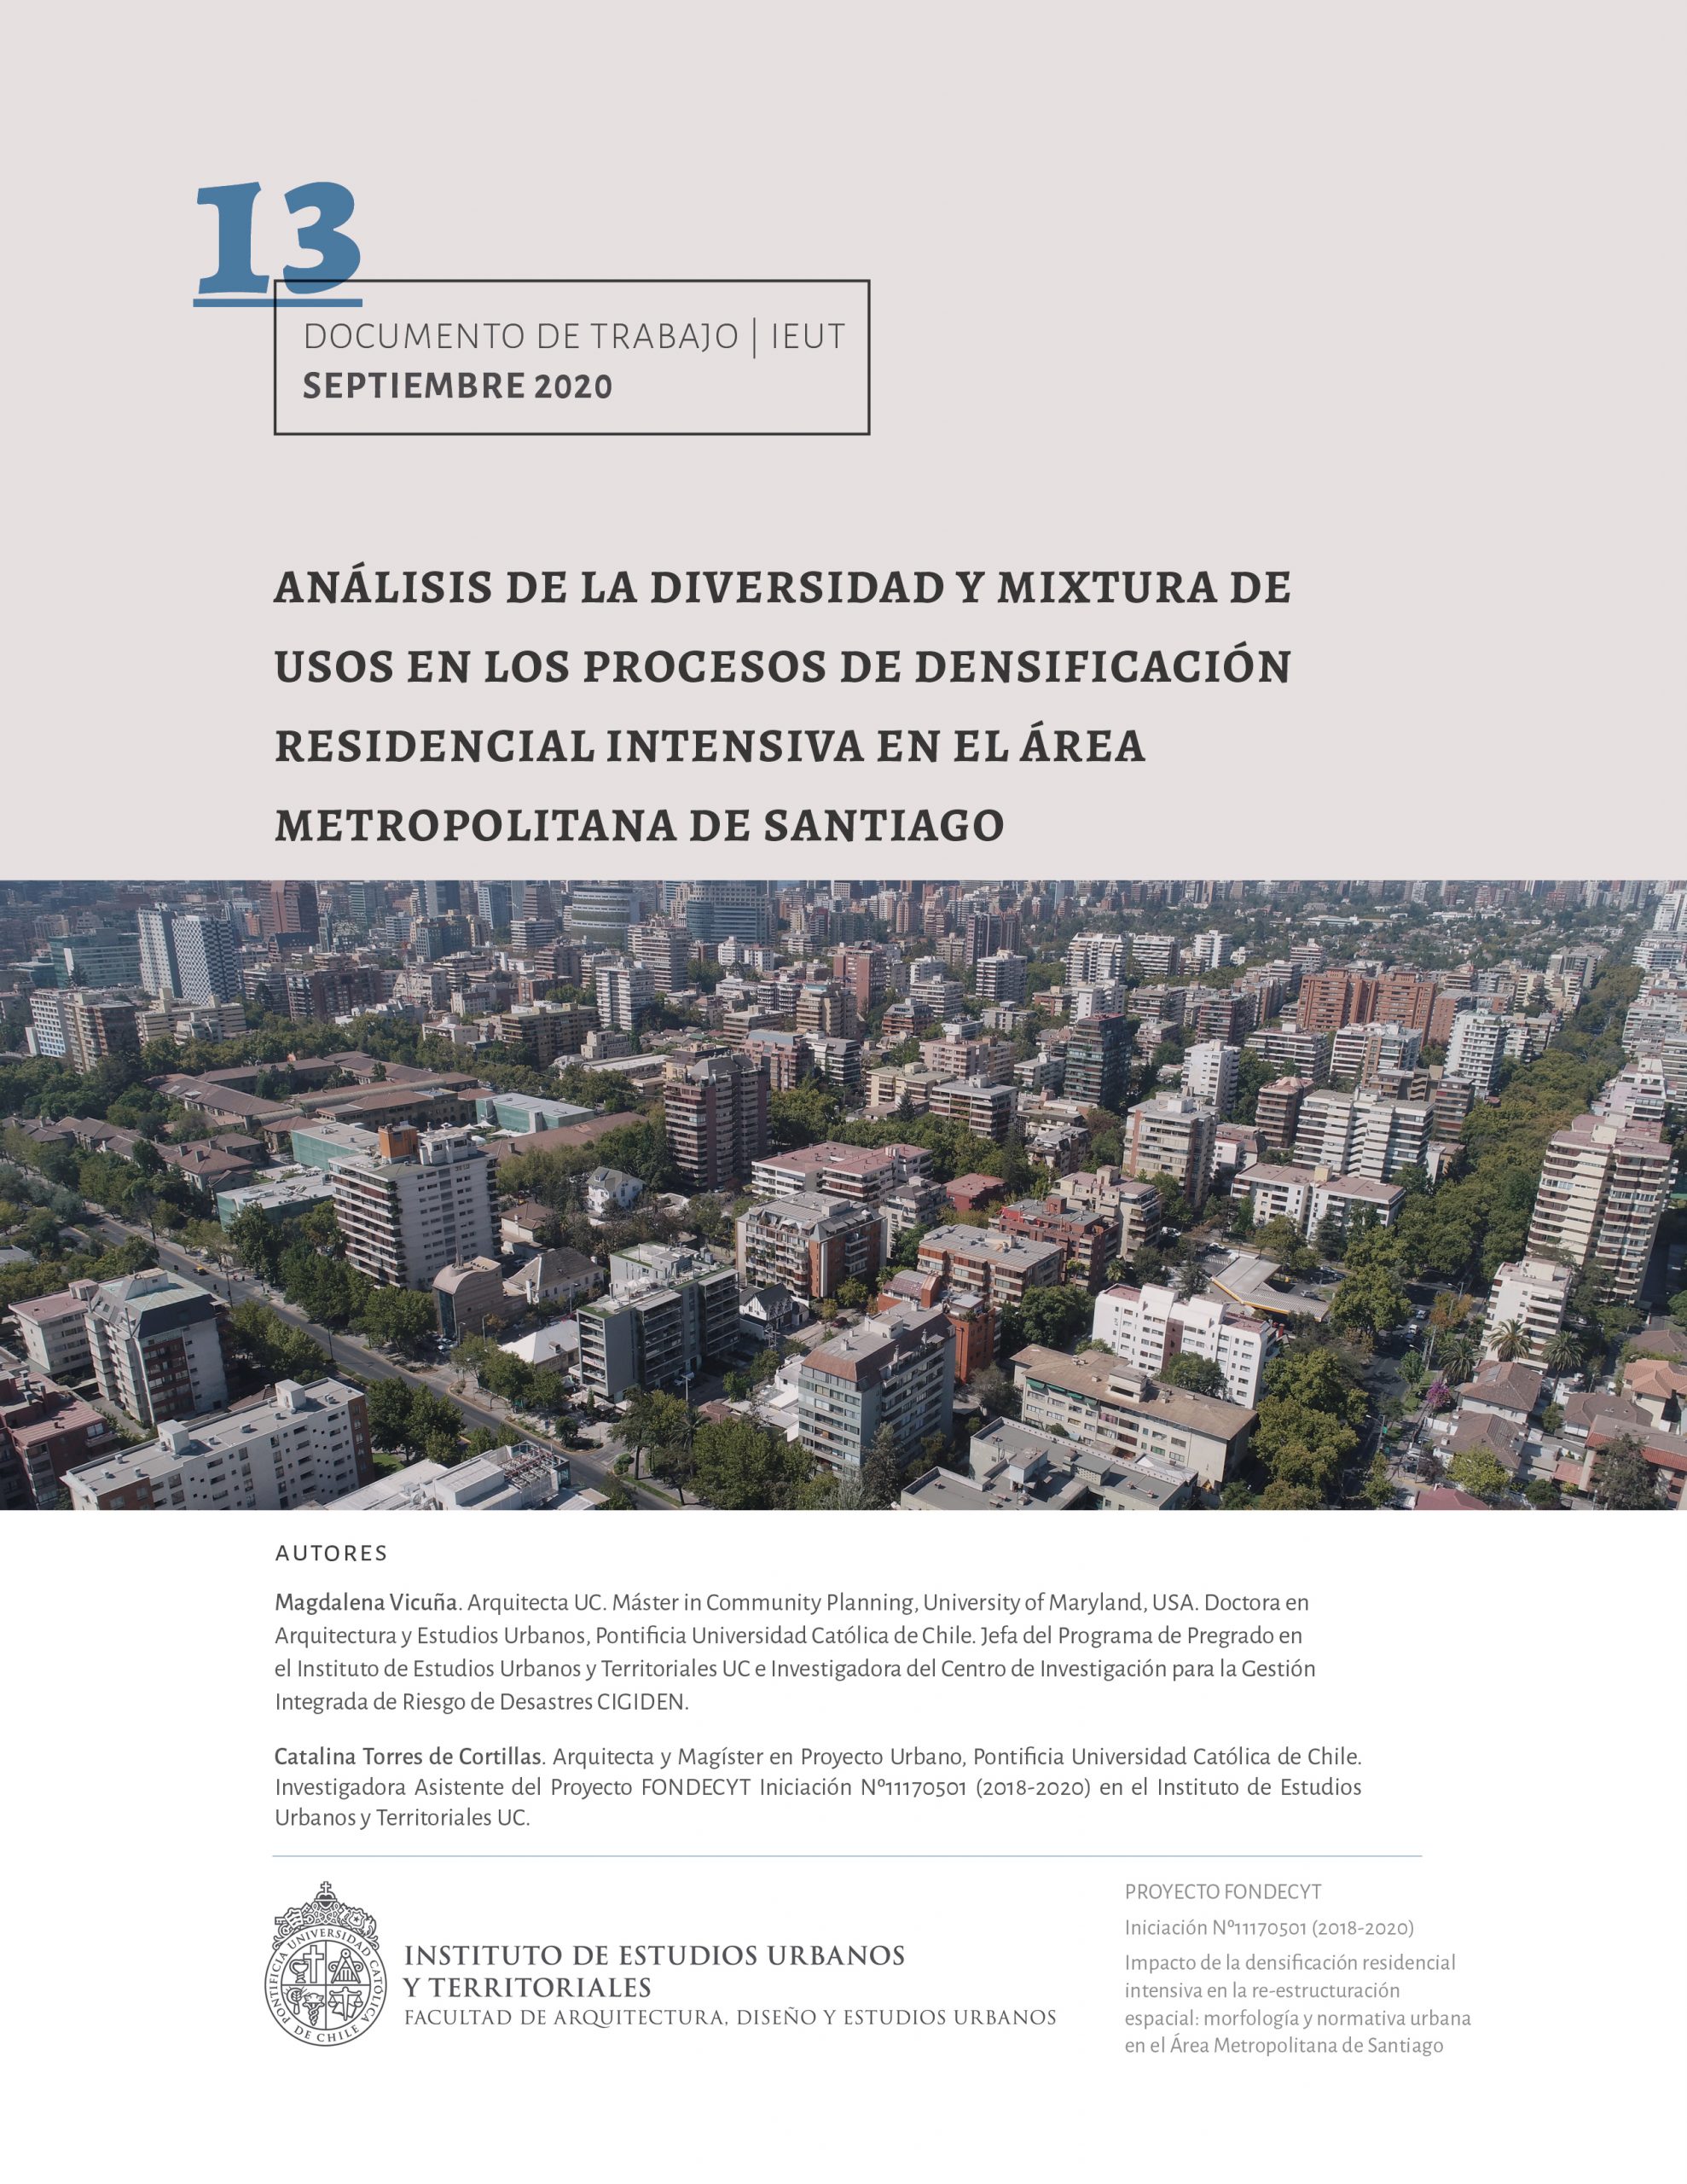 Análisis de la diversidad y mixtura de usos en los procesos de densificación residencial intensiva en el área metropolitana de Santiago